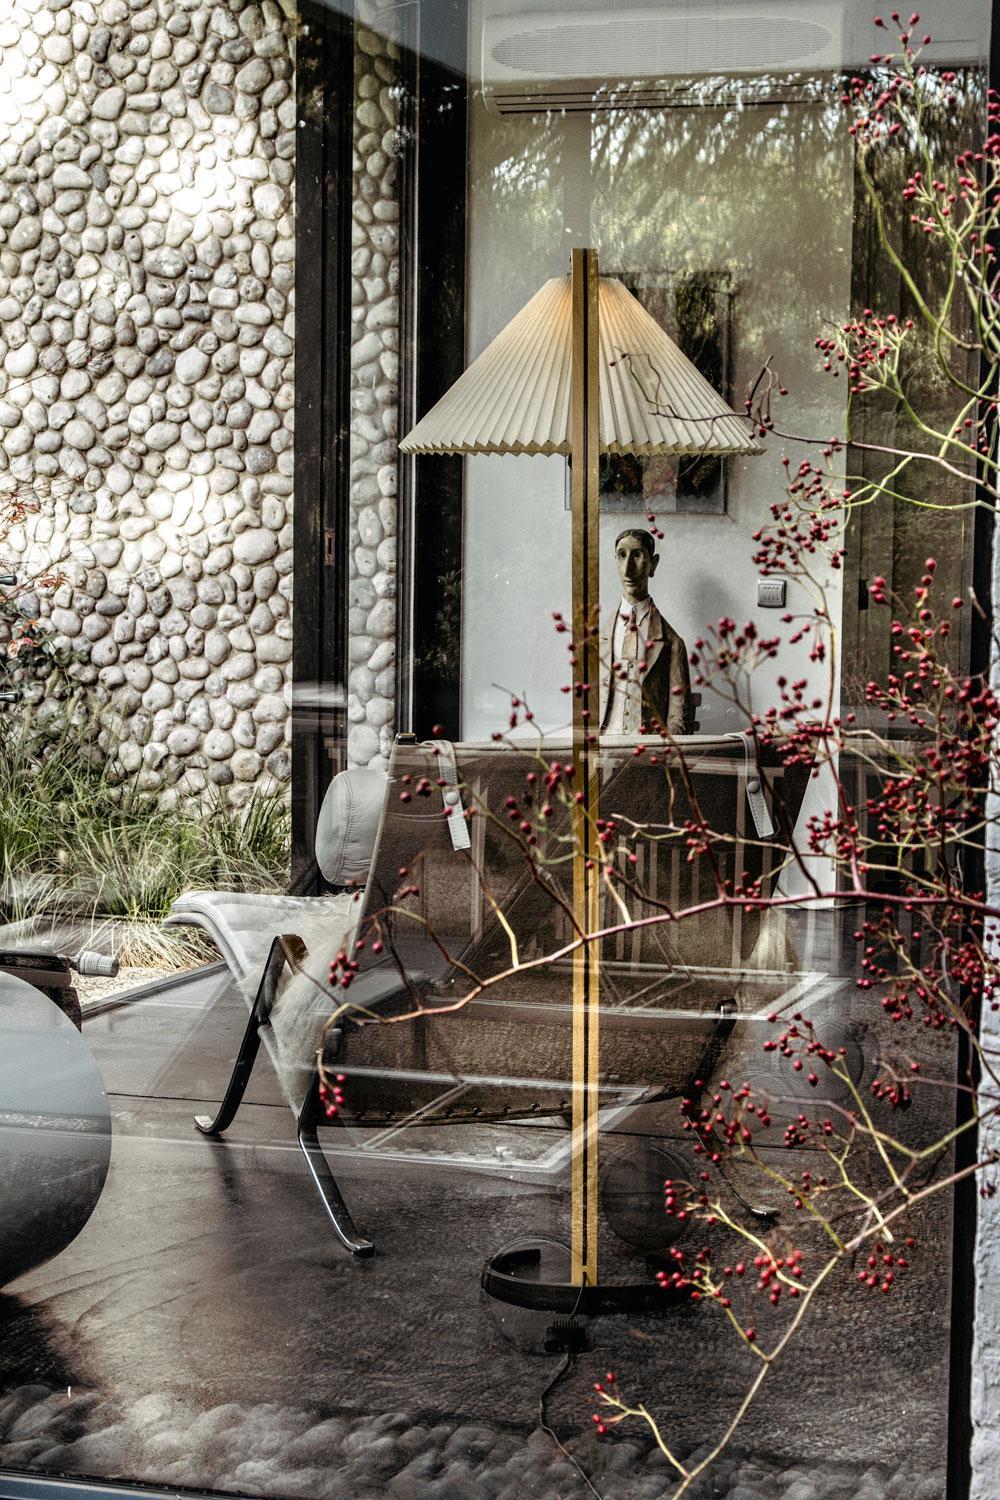 Le mur en galets du jardin a donné du fil à retordre à son concepteur. A l'avant-plan, une lampe scandinave vintage chinée.